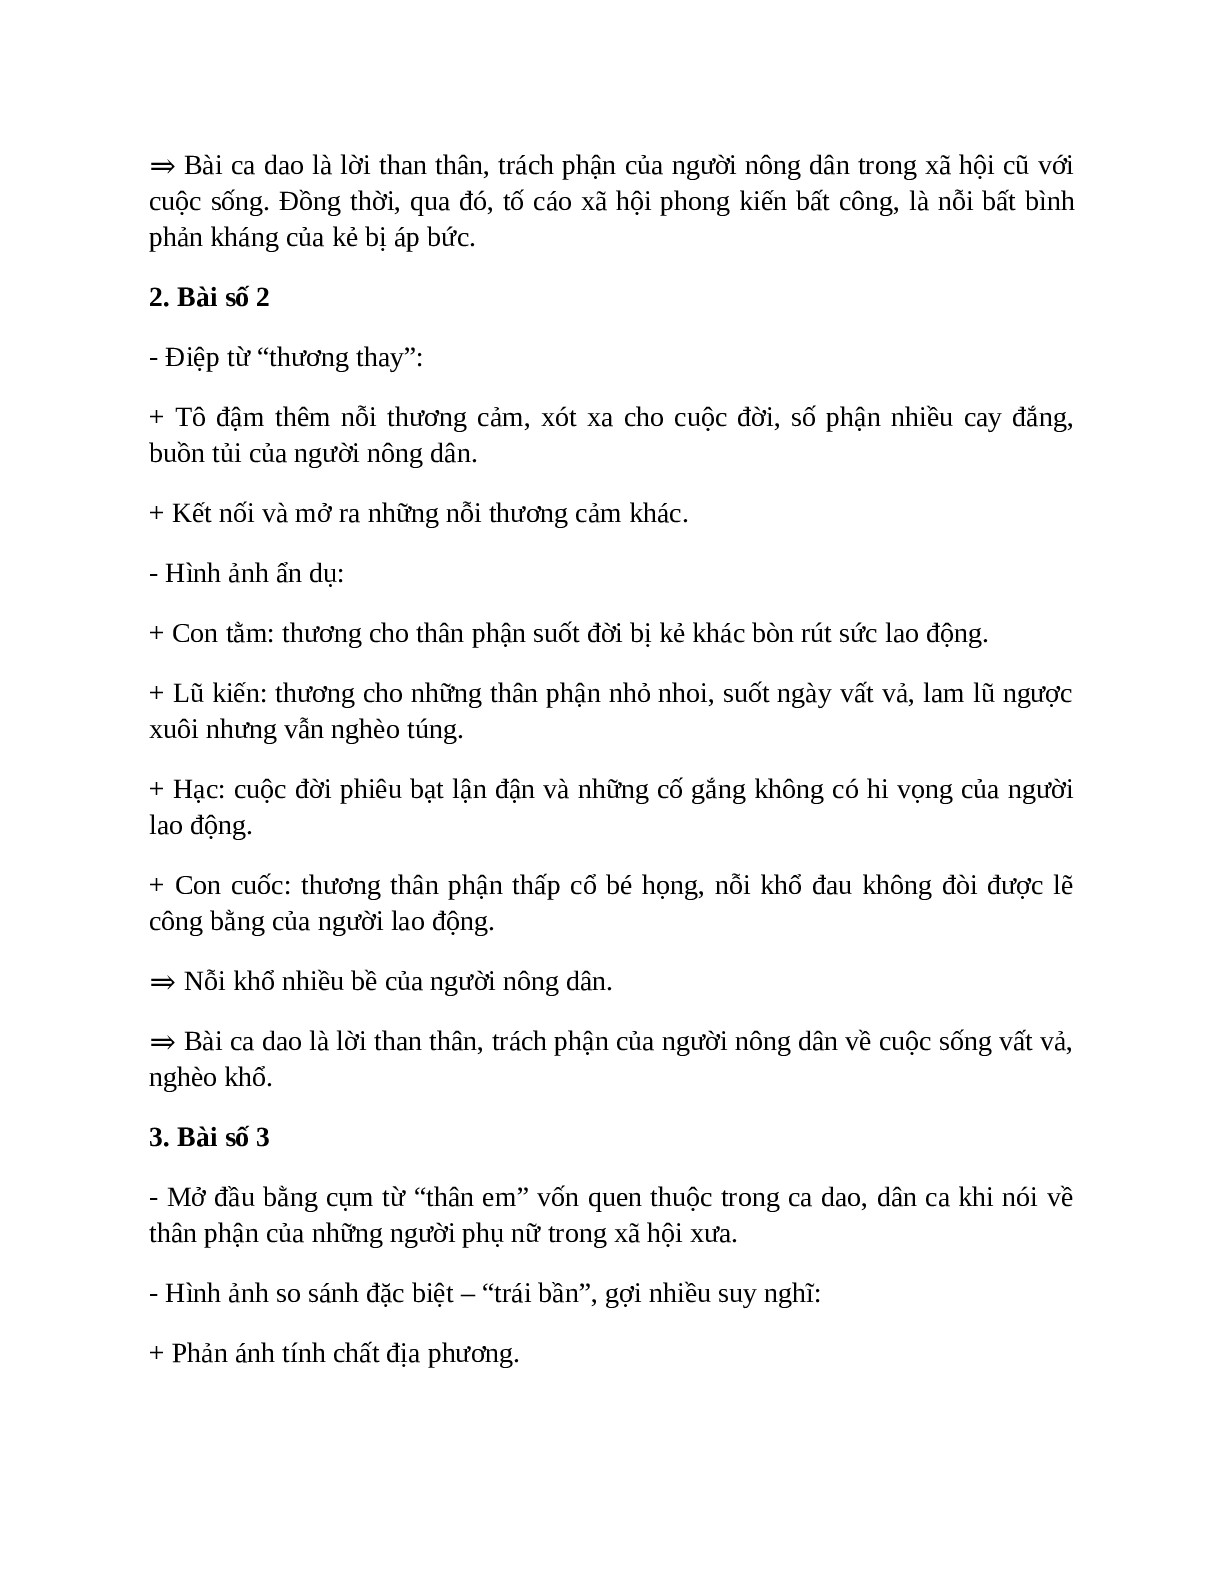 Sơ đồ tư duy bài Những câu hát than thân dễ nhớ, ngắn nhất - Ngữ văn lớp 7 (trang 3)